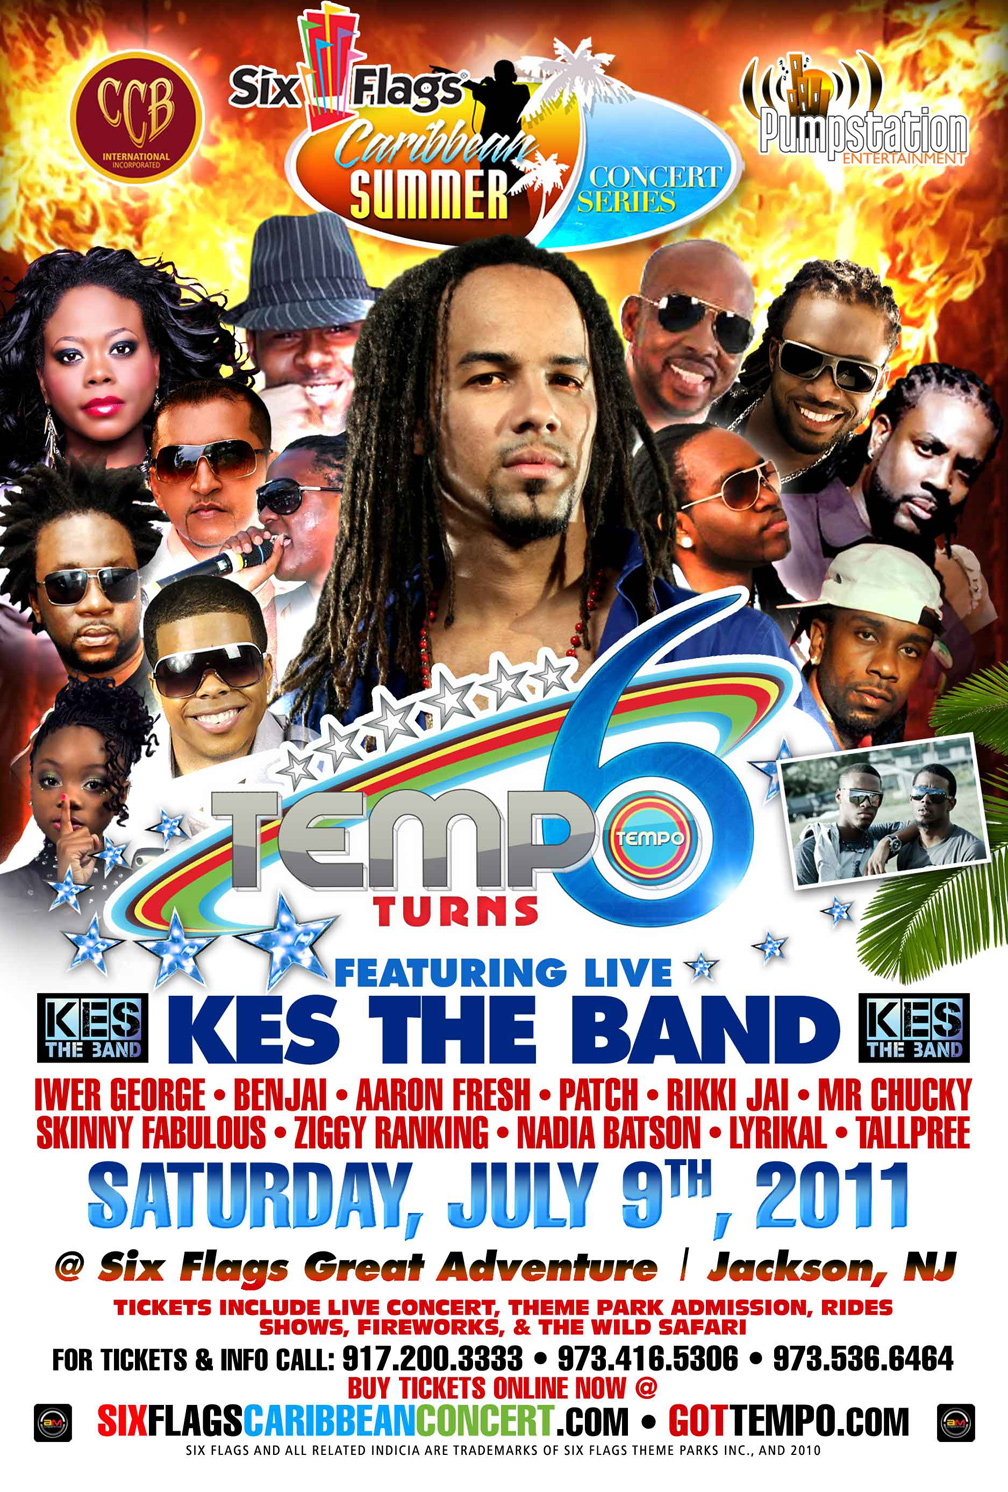 Six Flags Caribbean Summer Concert Series